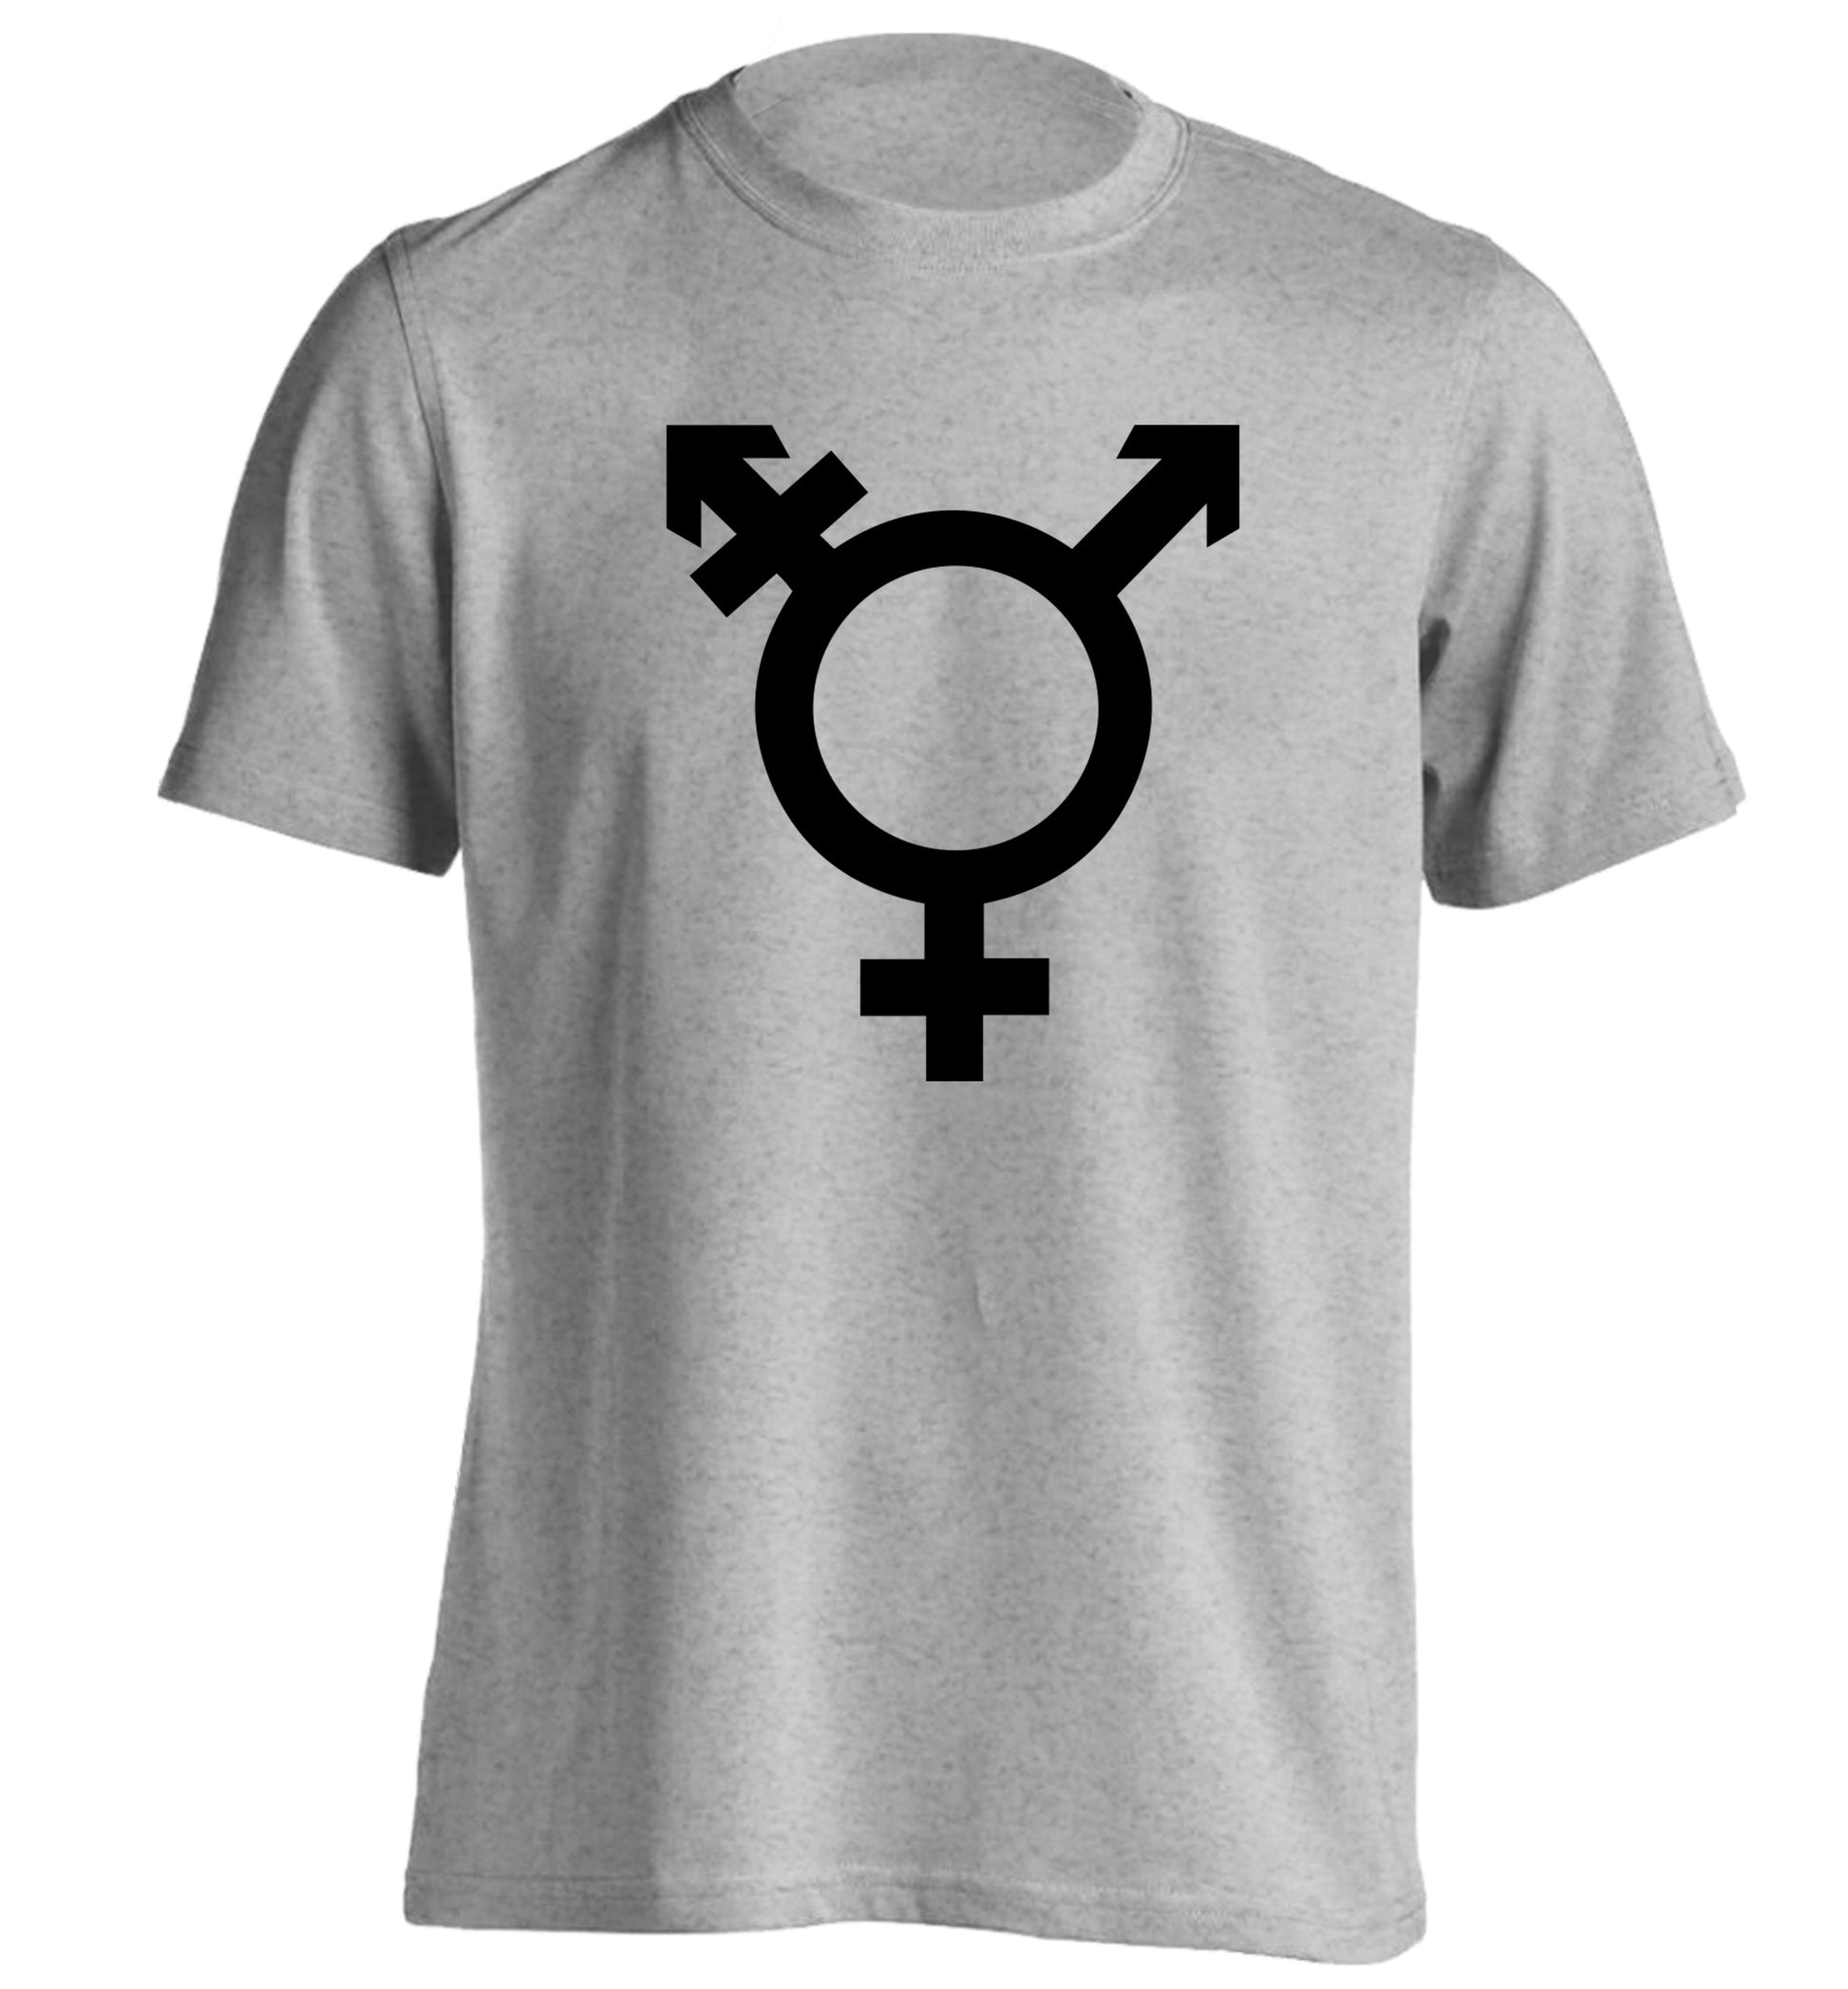 Gender neutral symbol large adults unisex grey Tshirt 2XL